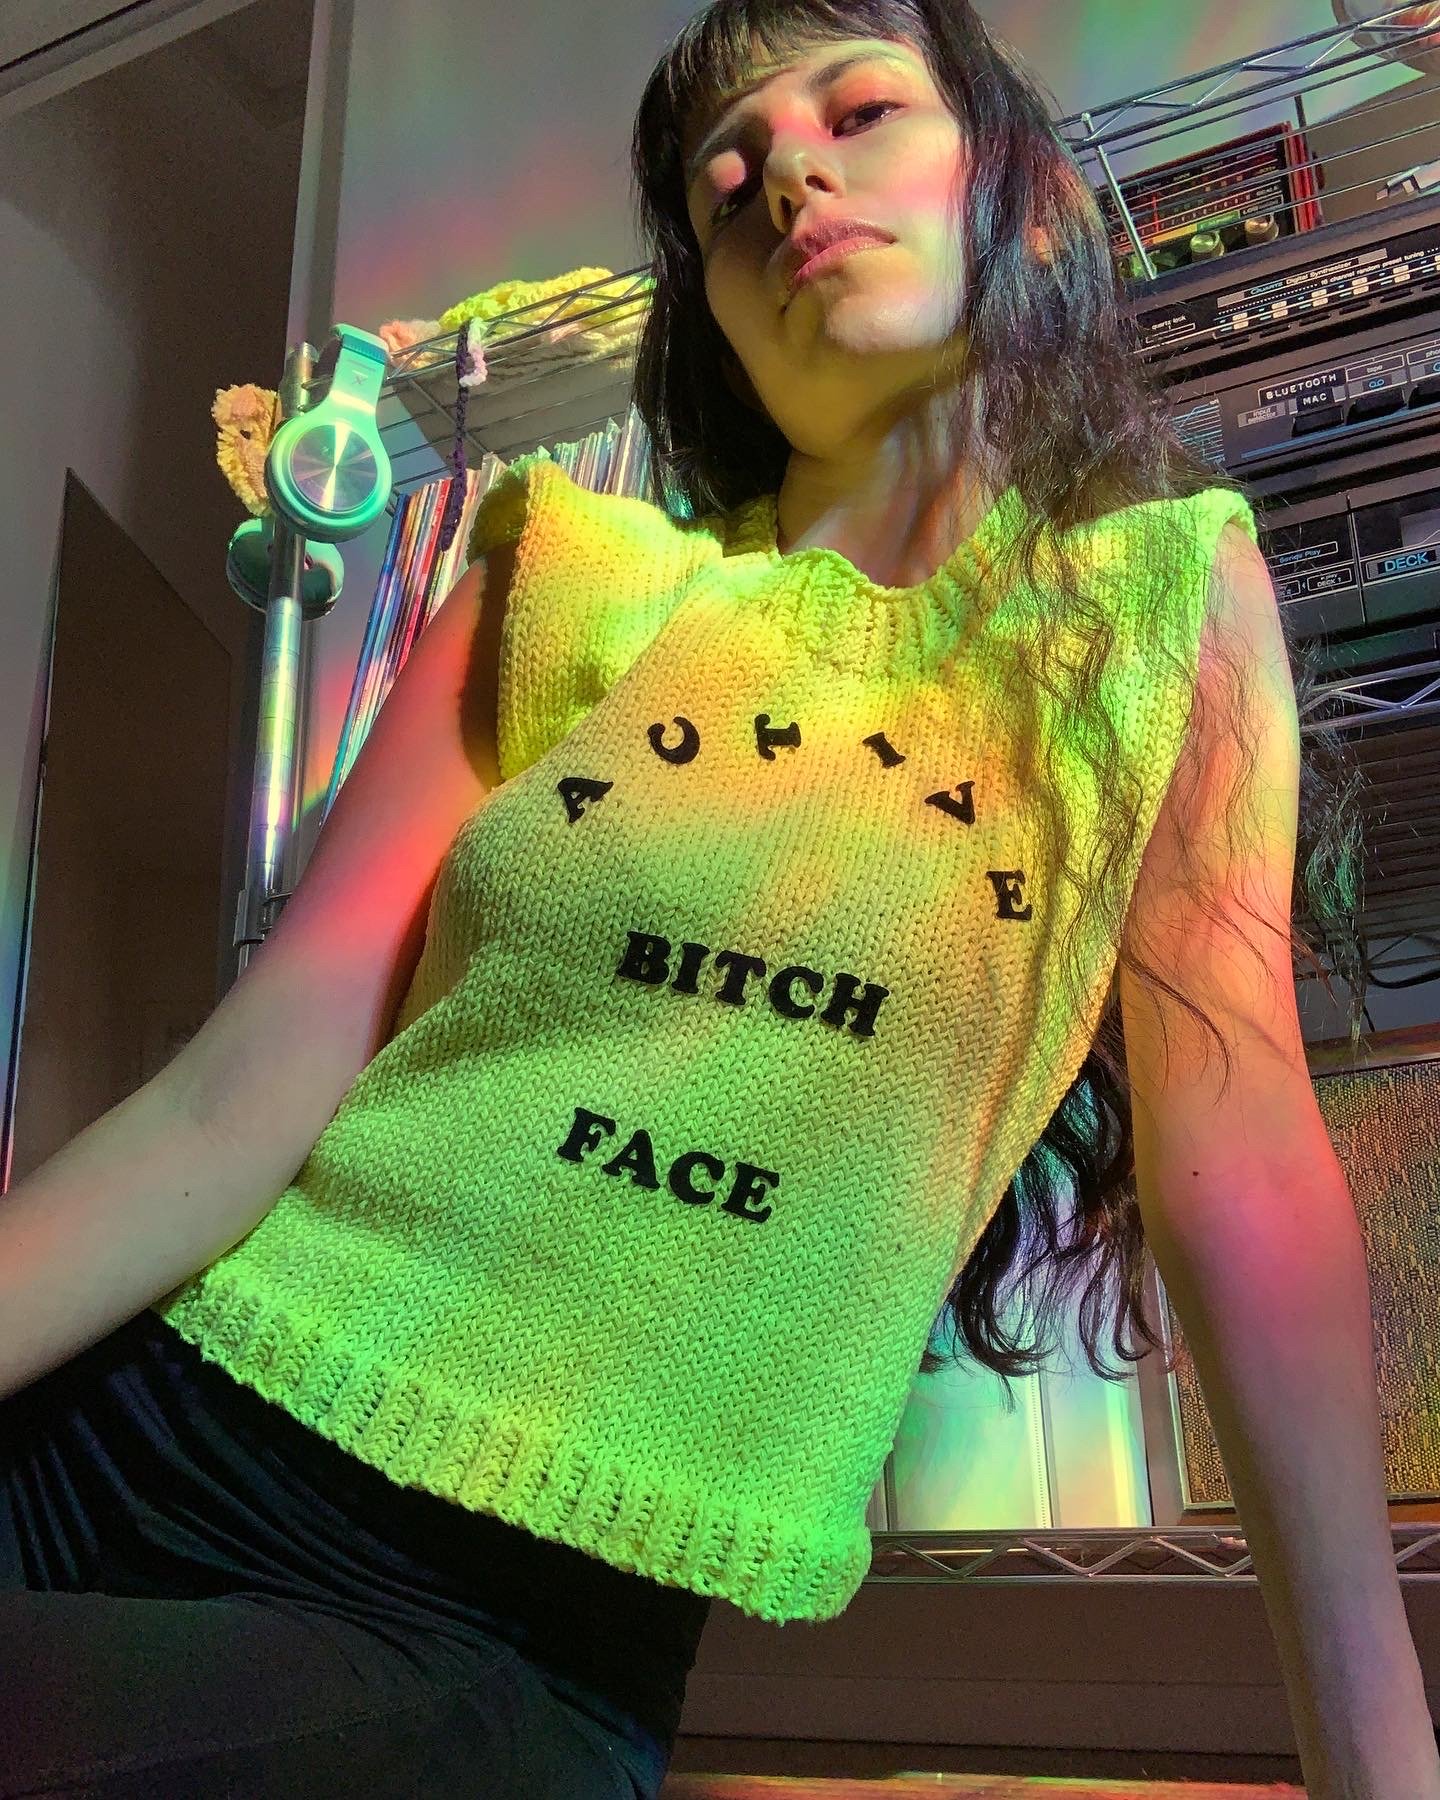 Active Bitch Face